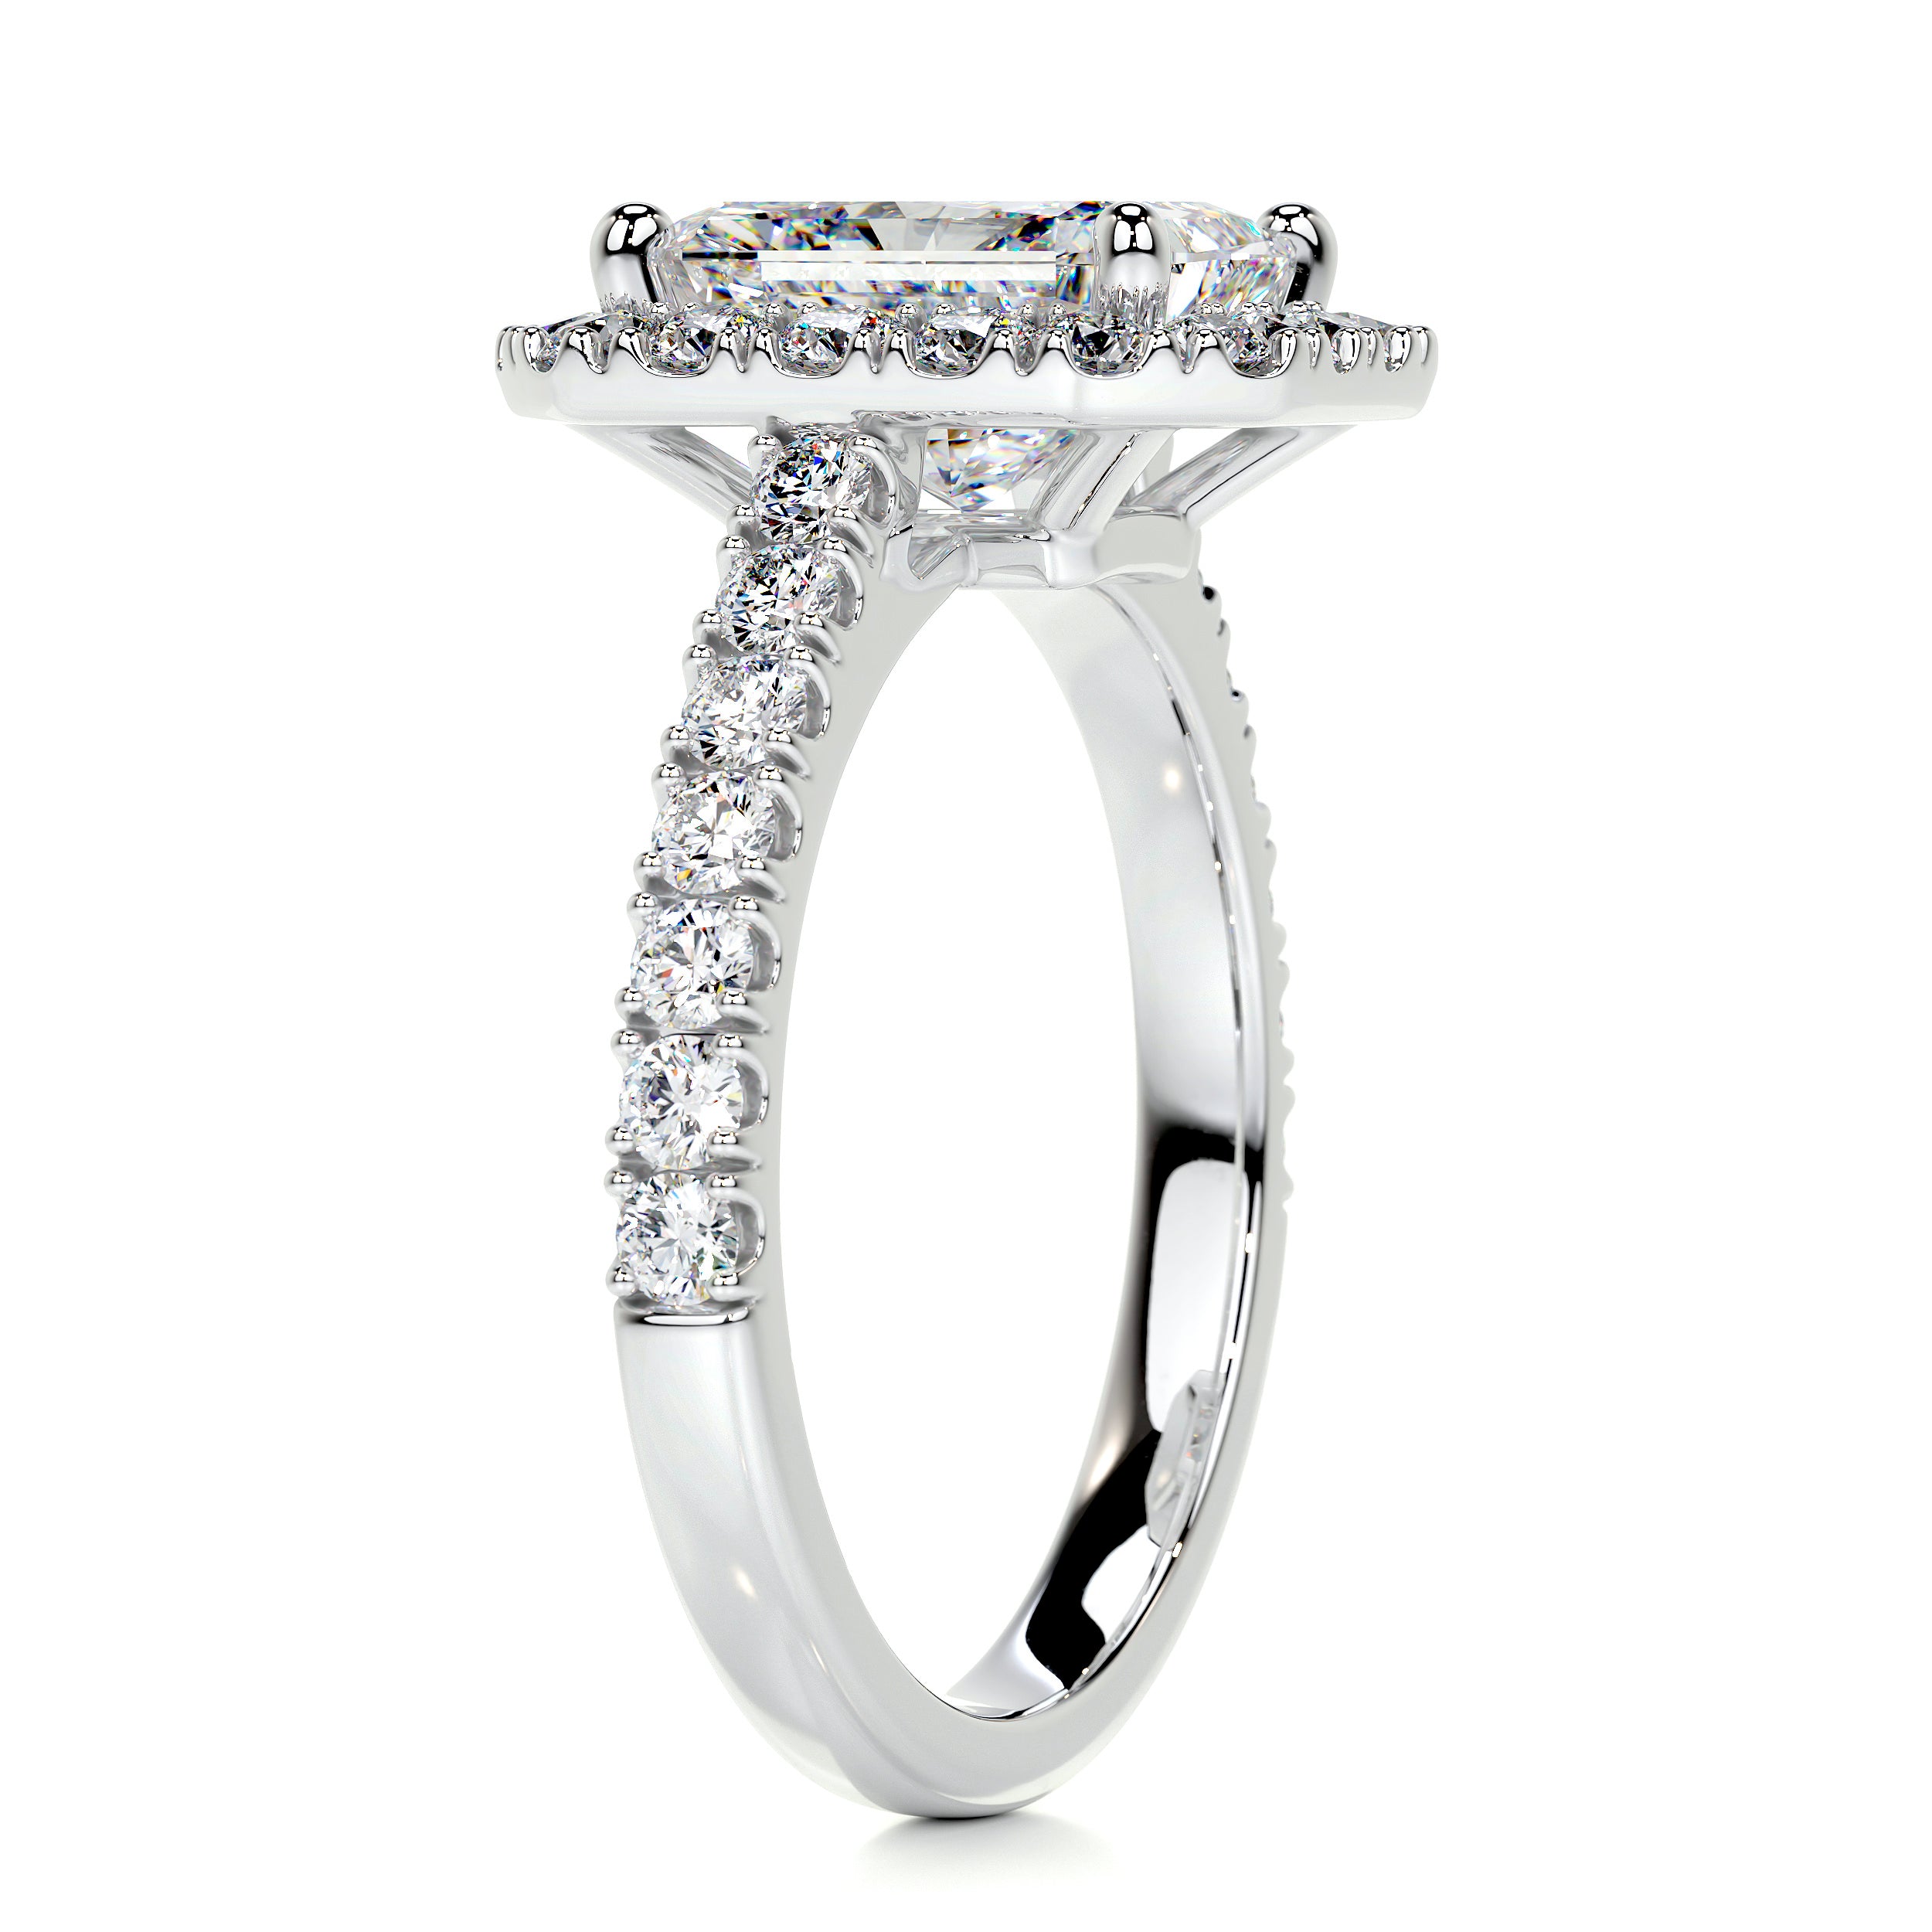 Andrea Moissanite & Diamonds Ring   (2.3 Carat) -18K White Gold